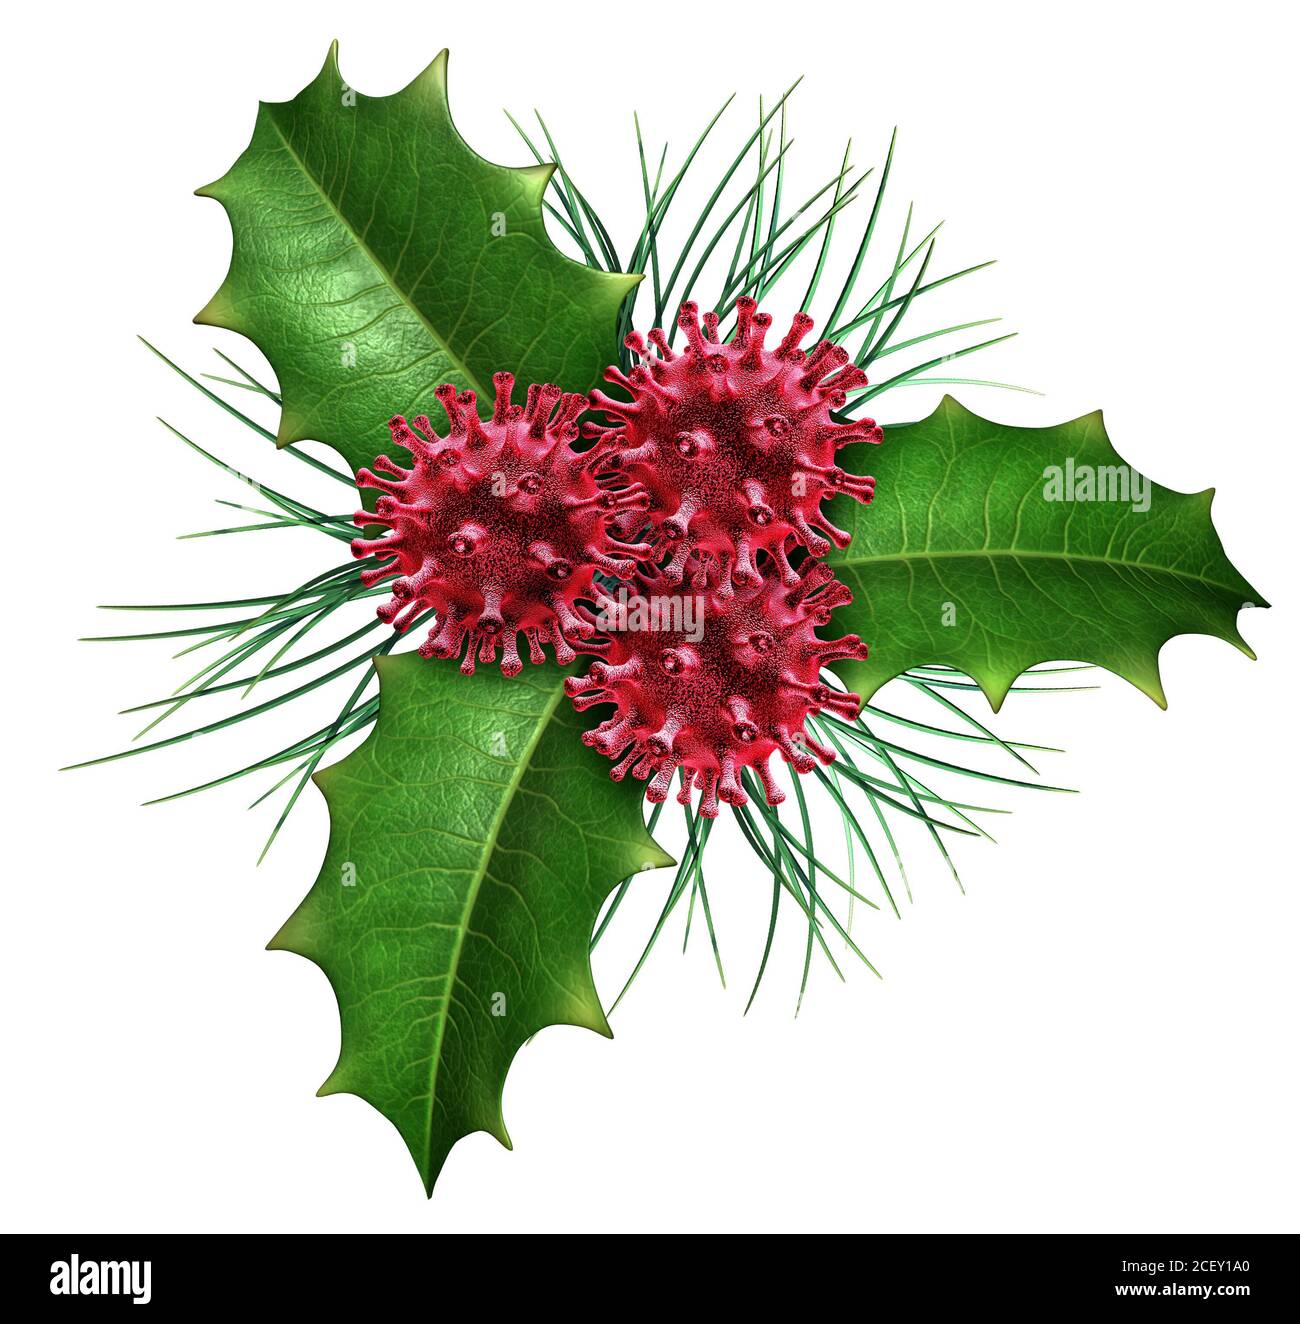 Salud y vacaciones de invierno como el holly de Navidad con bayas rojas en forma de células del virus como un símbolo médico y de la medicina para la gripe de temporada. Foto de stock